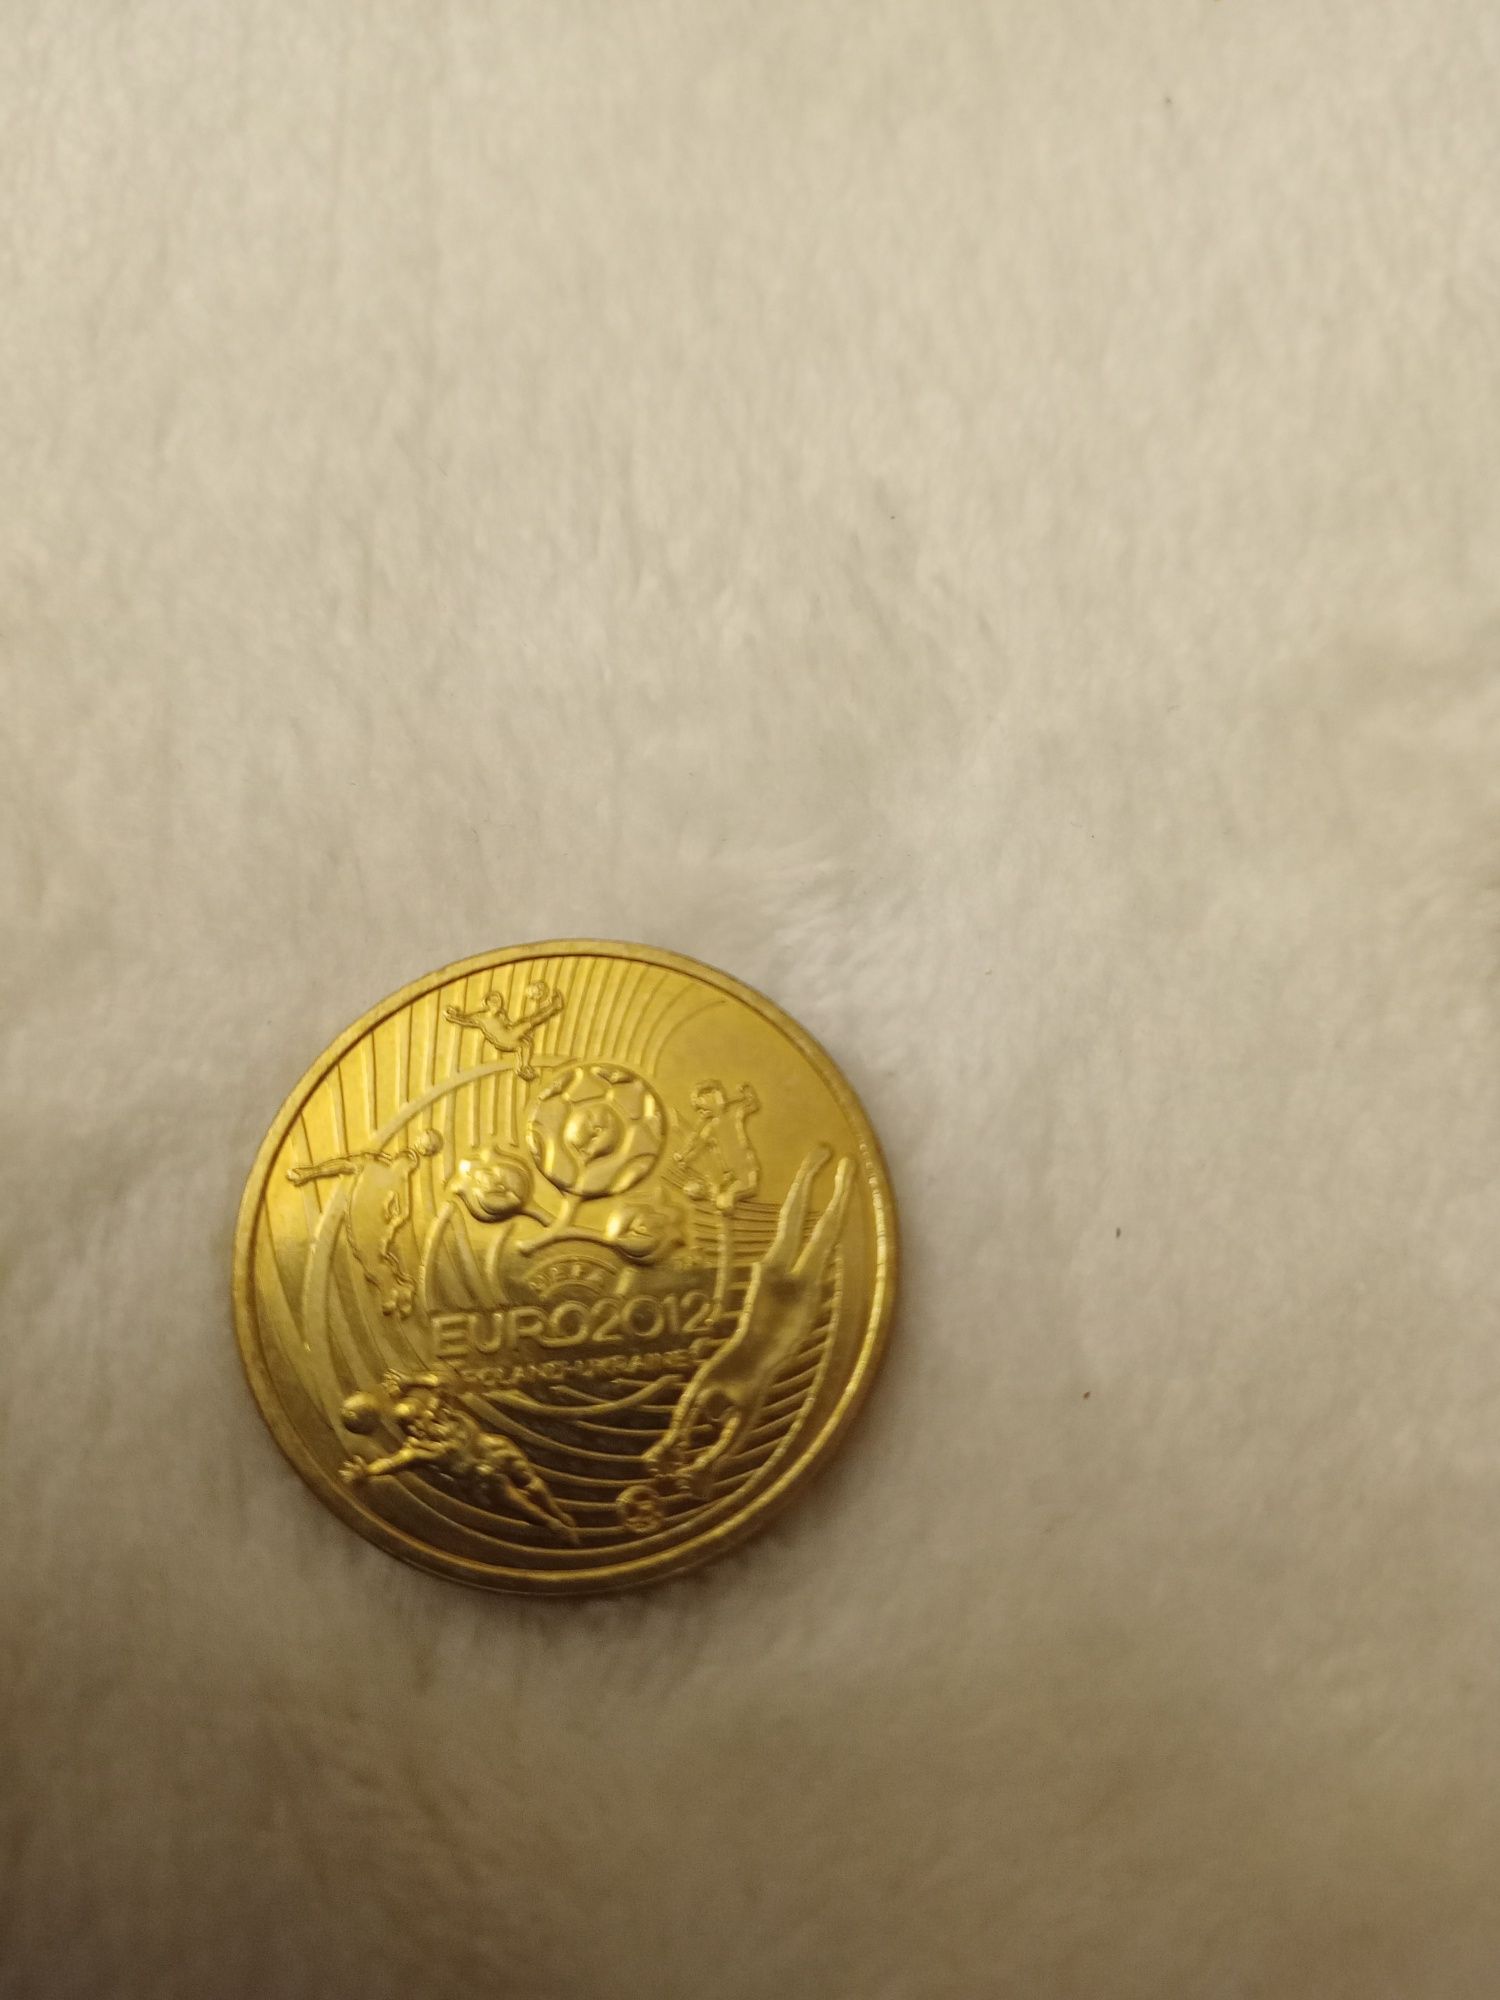 Moneta 2 zł Euro 2012 sztuk 33